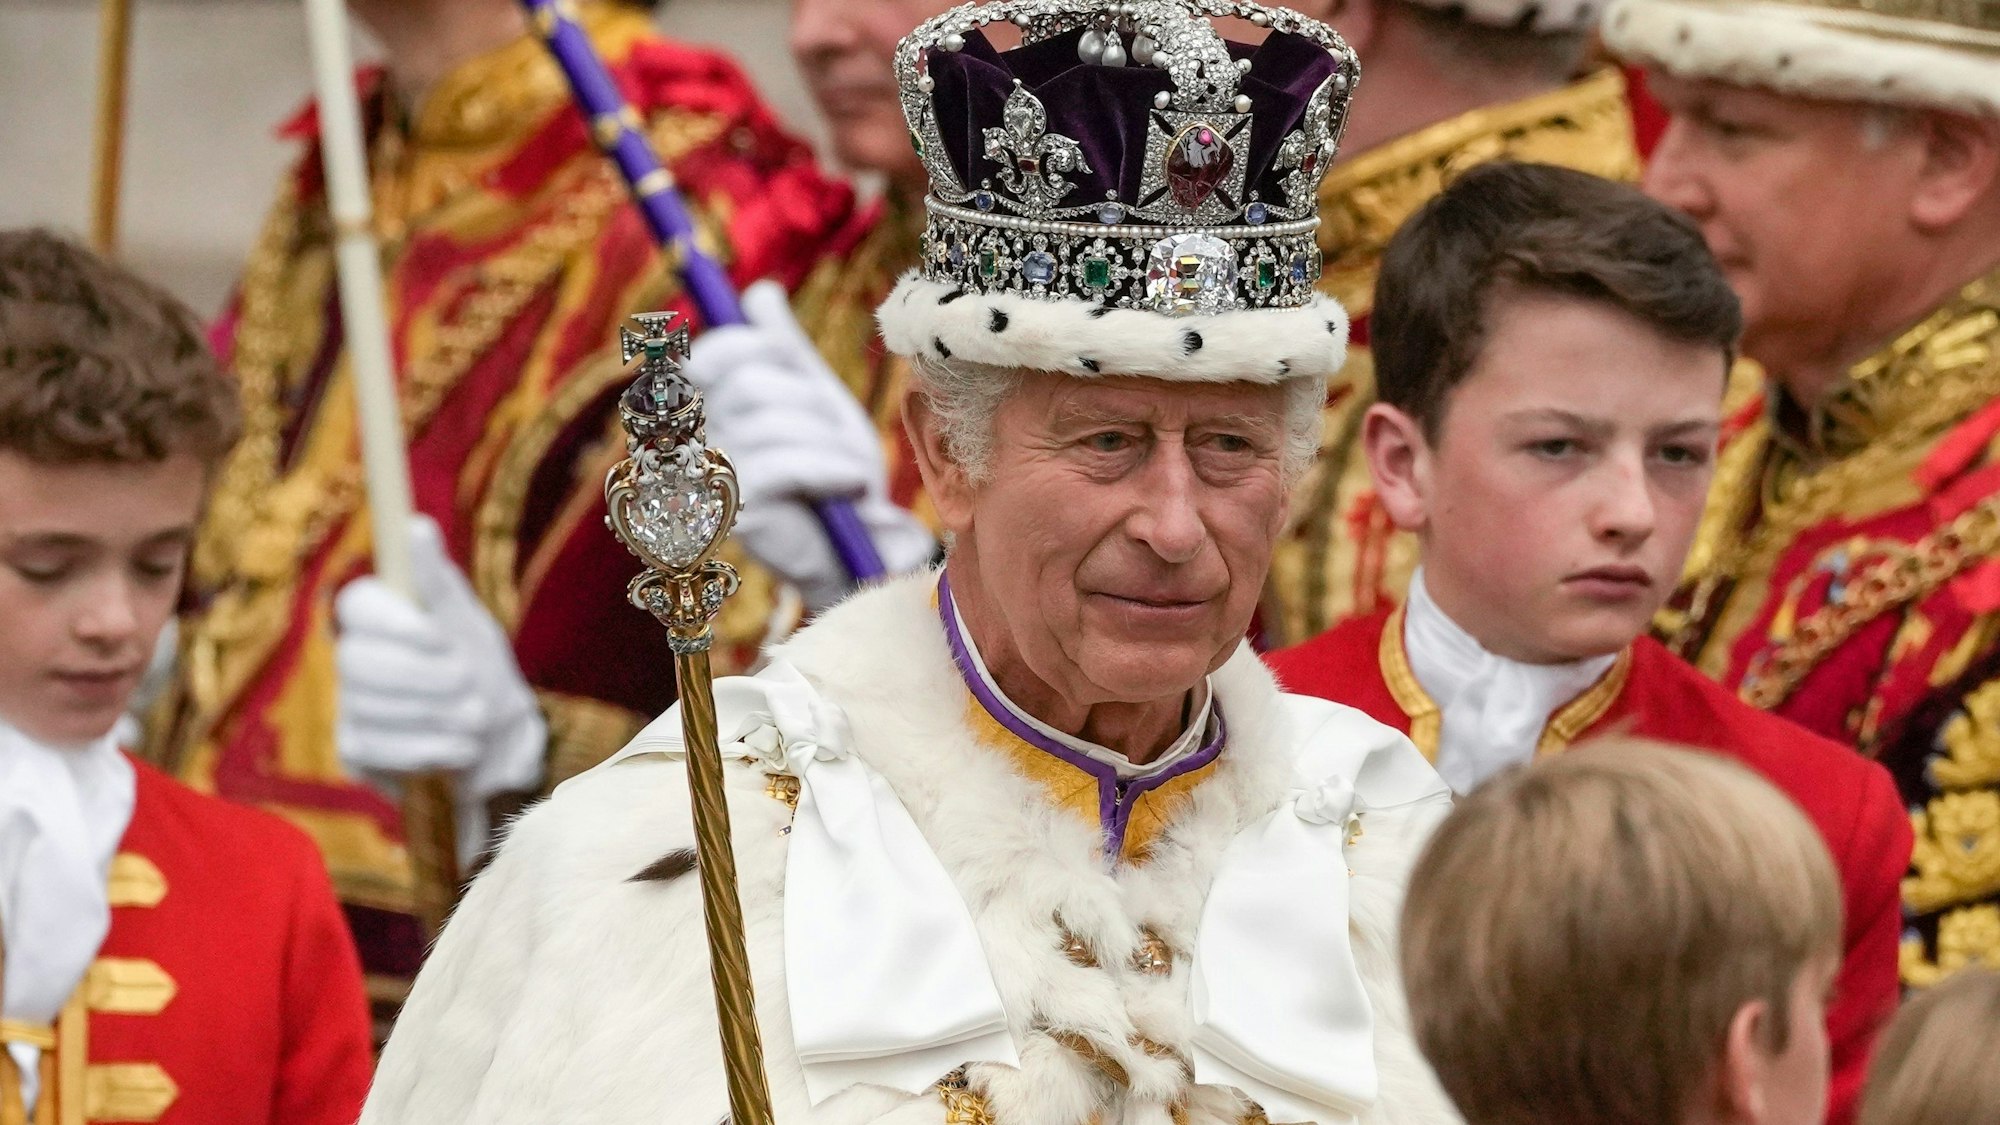 König Charles III. verlässt nach der Krönungszeremonie mit der Imperial State Crown, einem Zepter und dem Reichsapfel die Westminster Abbey.